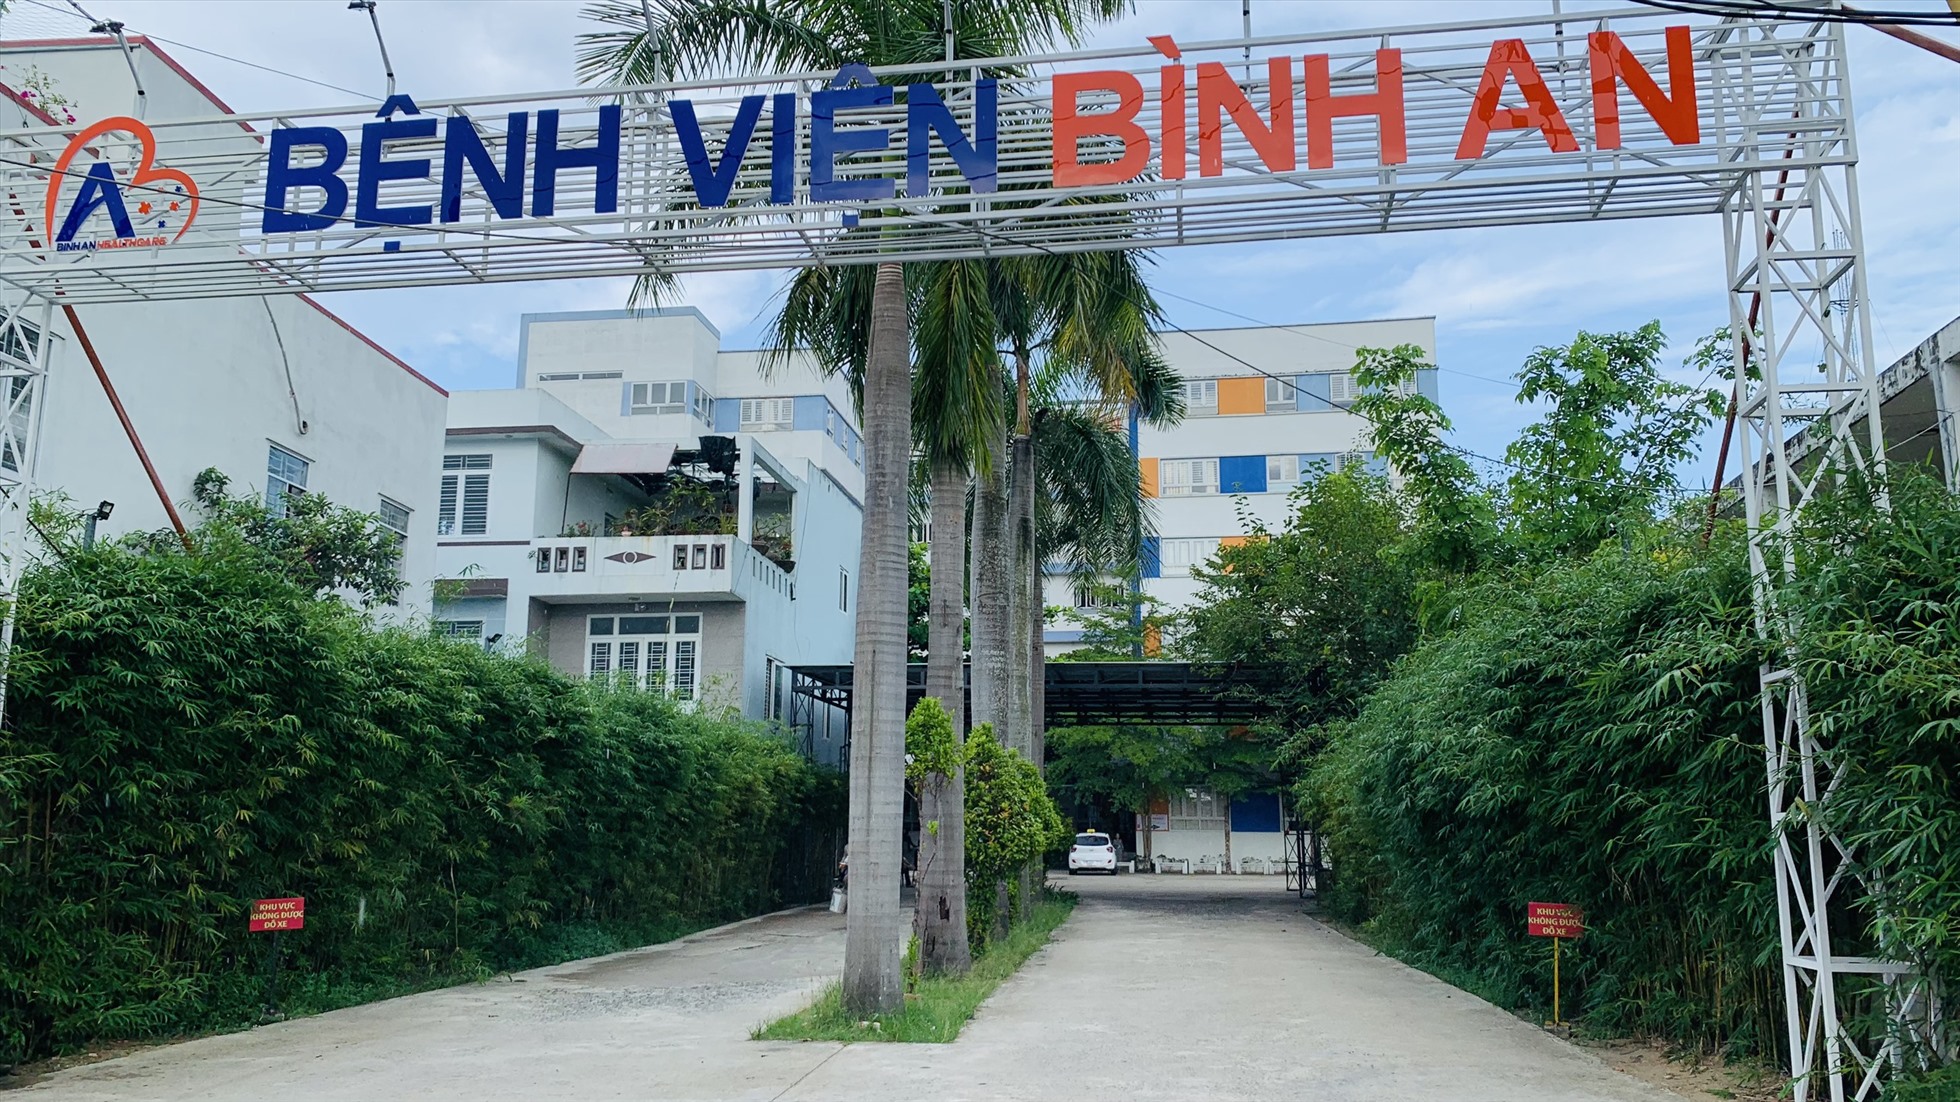 Bệnh viện Bình An Quảng Nam trực thuộc Hệ thống Y khoa Bình An, hoạt động trong lĩnh vực y tế tư nhân tại khu vực Quảng Nam - Đà Nẵng, chính thức đi vào hoạt động từ tháng 5.2019. Ảnh Hoàng Bin